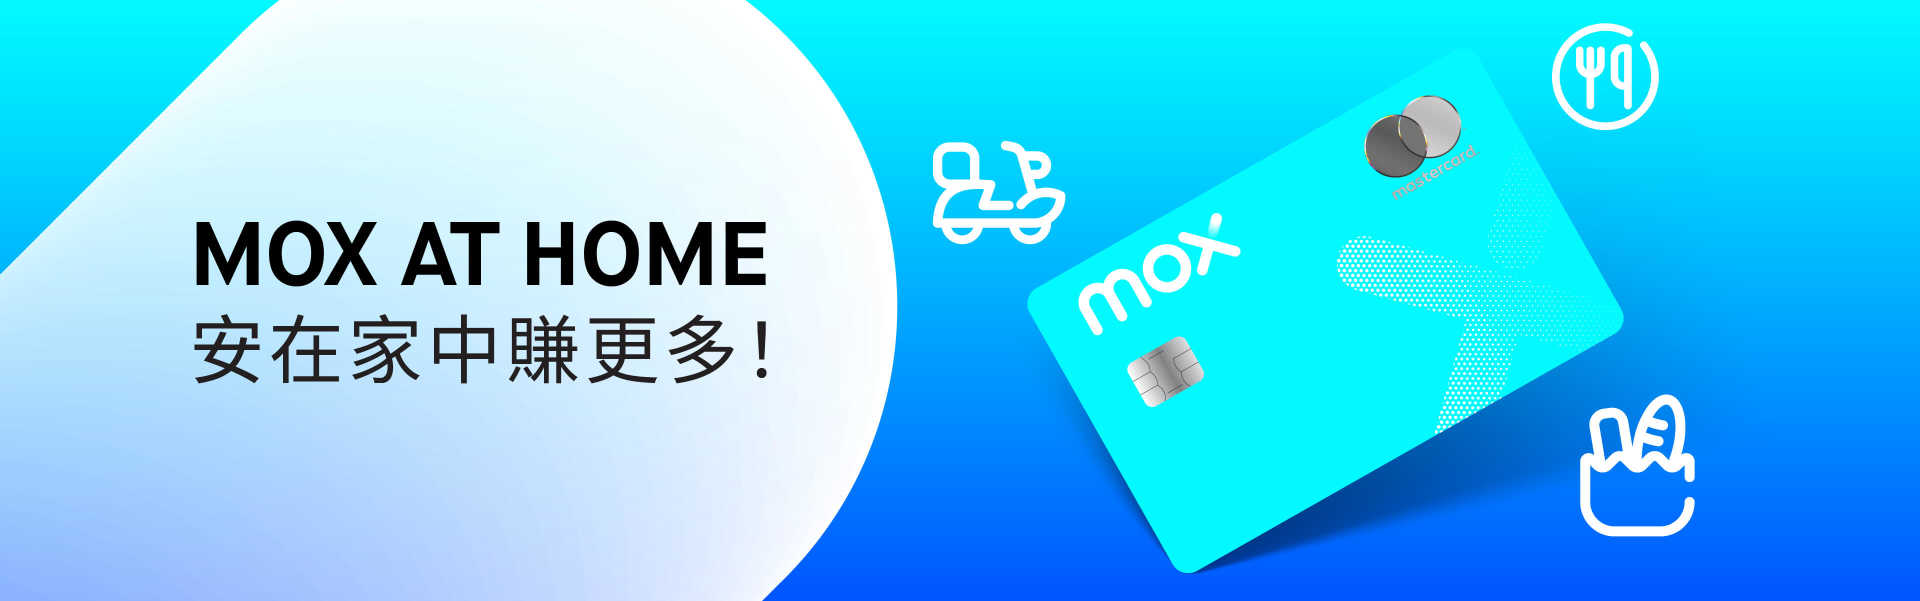 Mox一系列優惠讓你居家抗疫期間，盡享數碼生活日常便利 